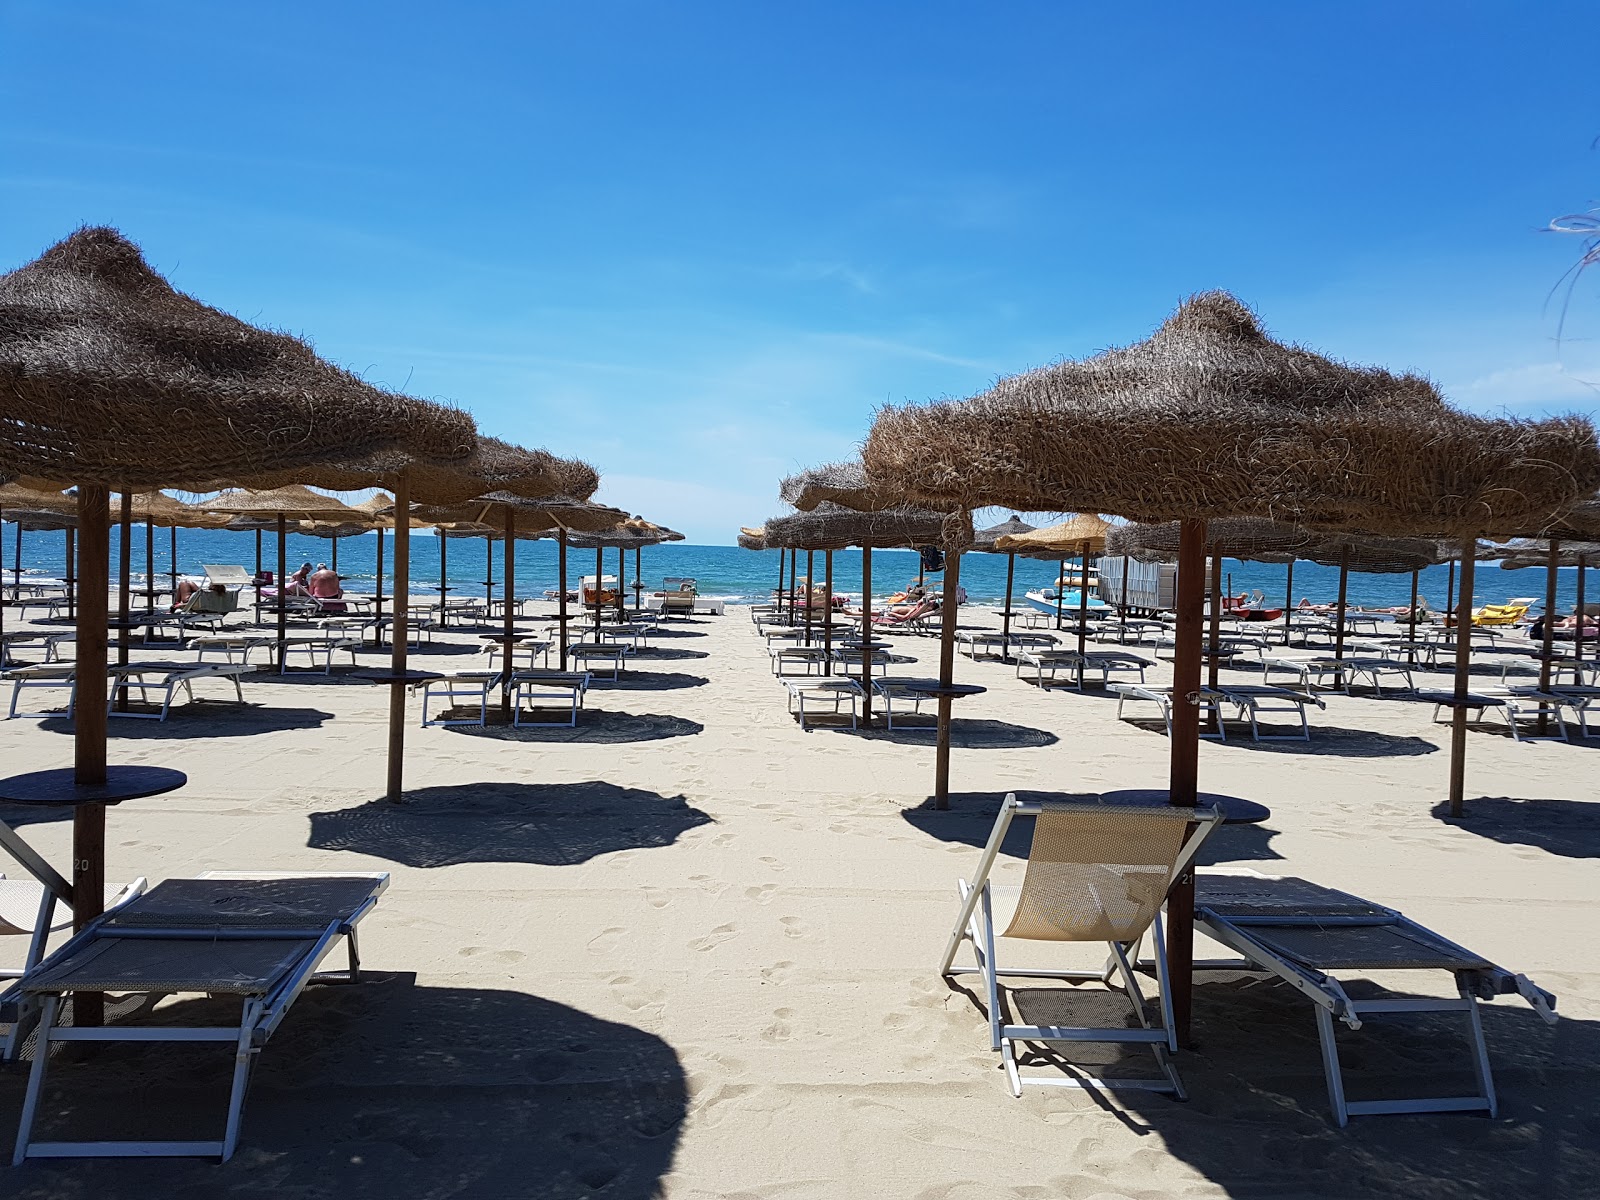 Photo de Spiaggia Libera Tirrenia - endroit populaire parmi les connaisseurs de la détente